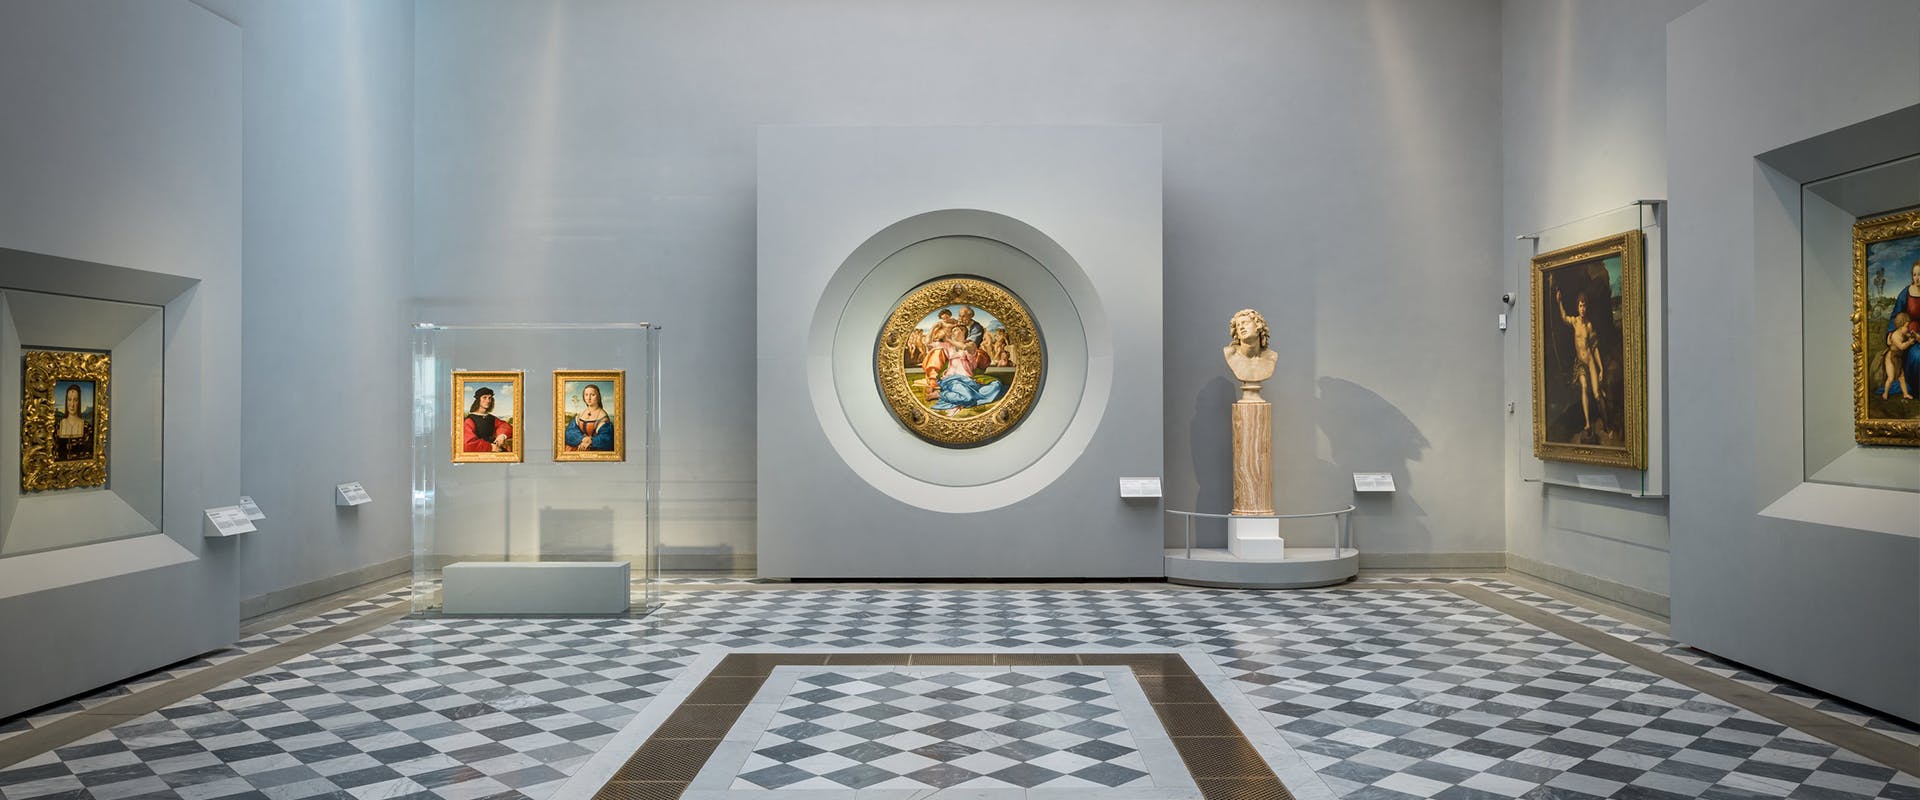 Inaugurata la nuova sala dedicata a Raffaello e Michelangelo